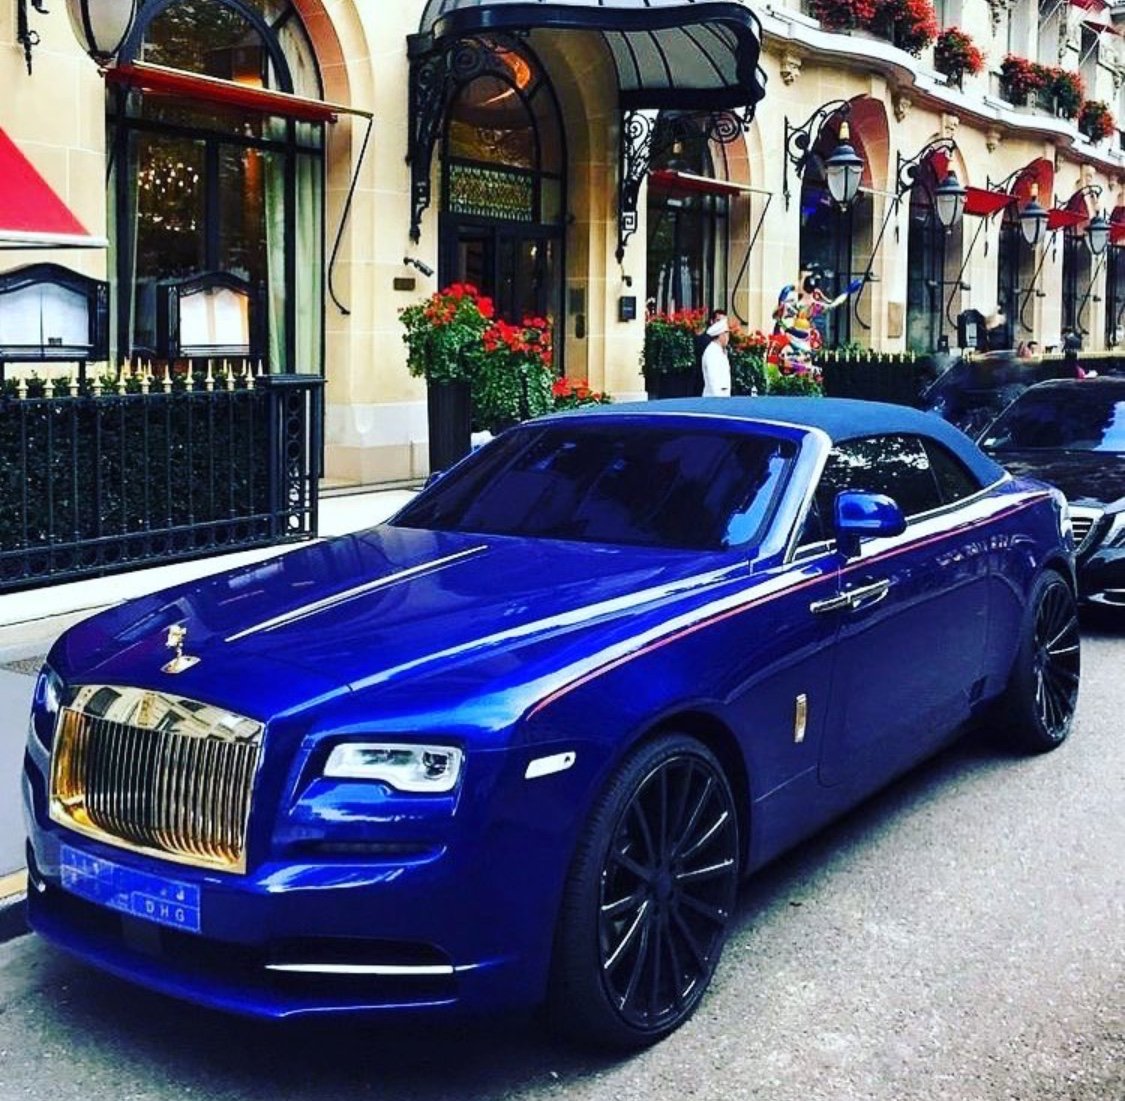 Крутой rolls royce. Роллс Ройс. Автомобиль Роллс Ройс. Роллс Ройс Luxury. Rolls Royce машина Rolls Royce.